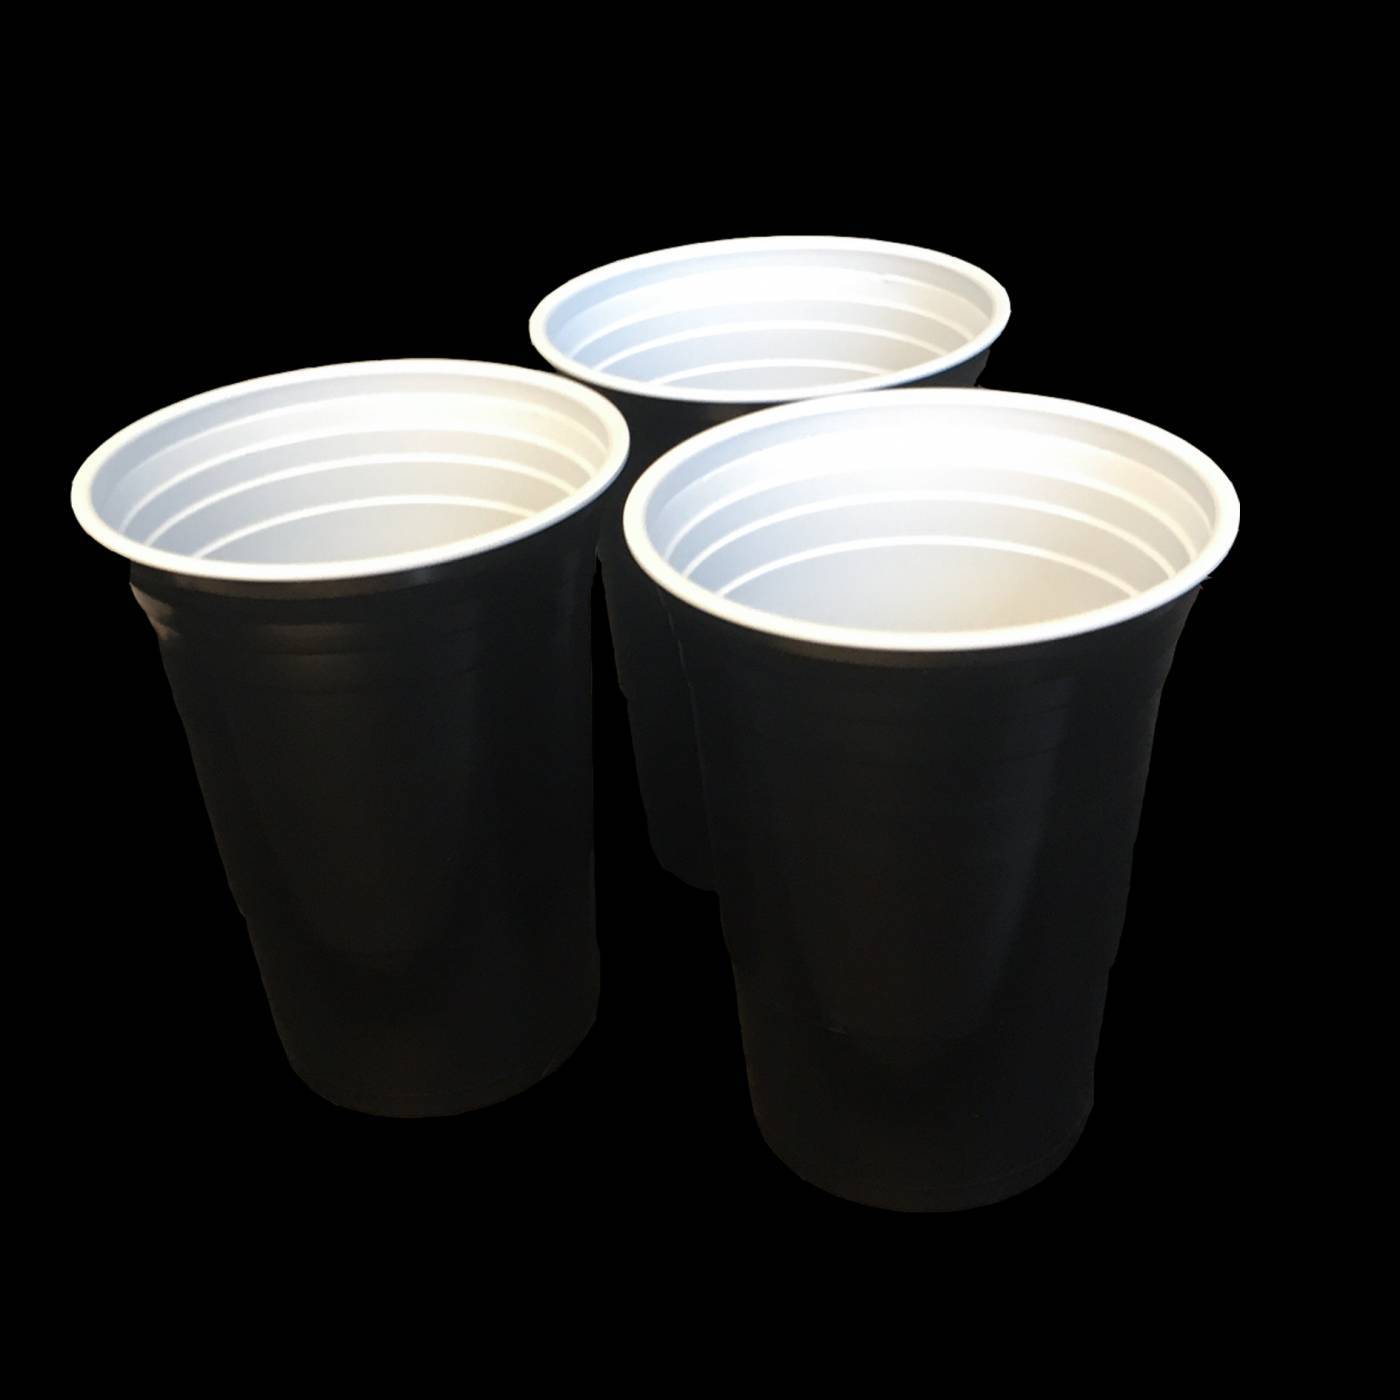 cups kopen? | De Horeca Bazaar